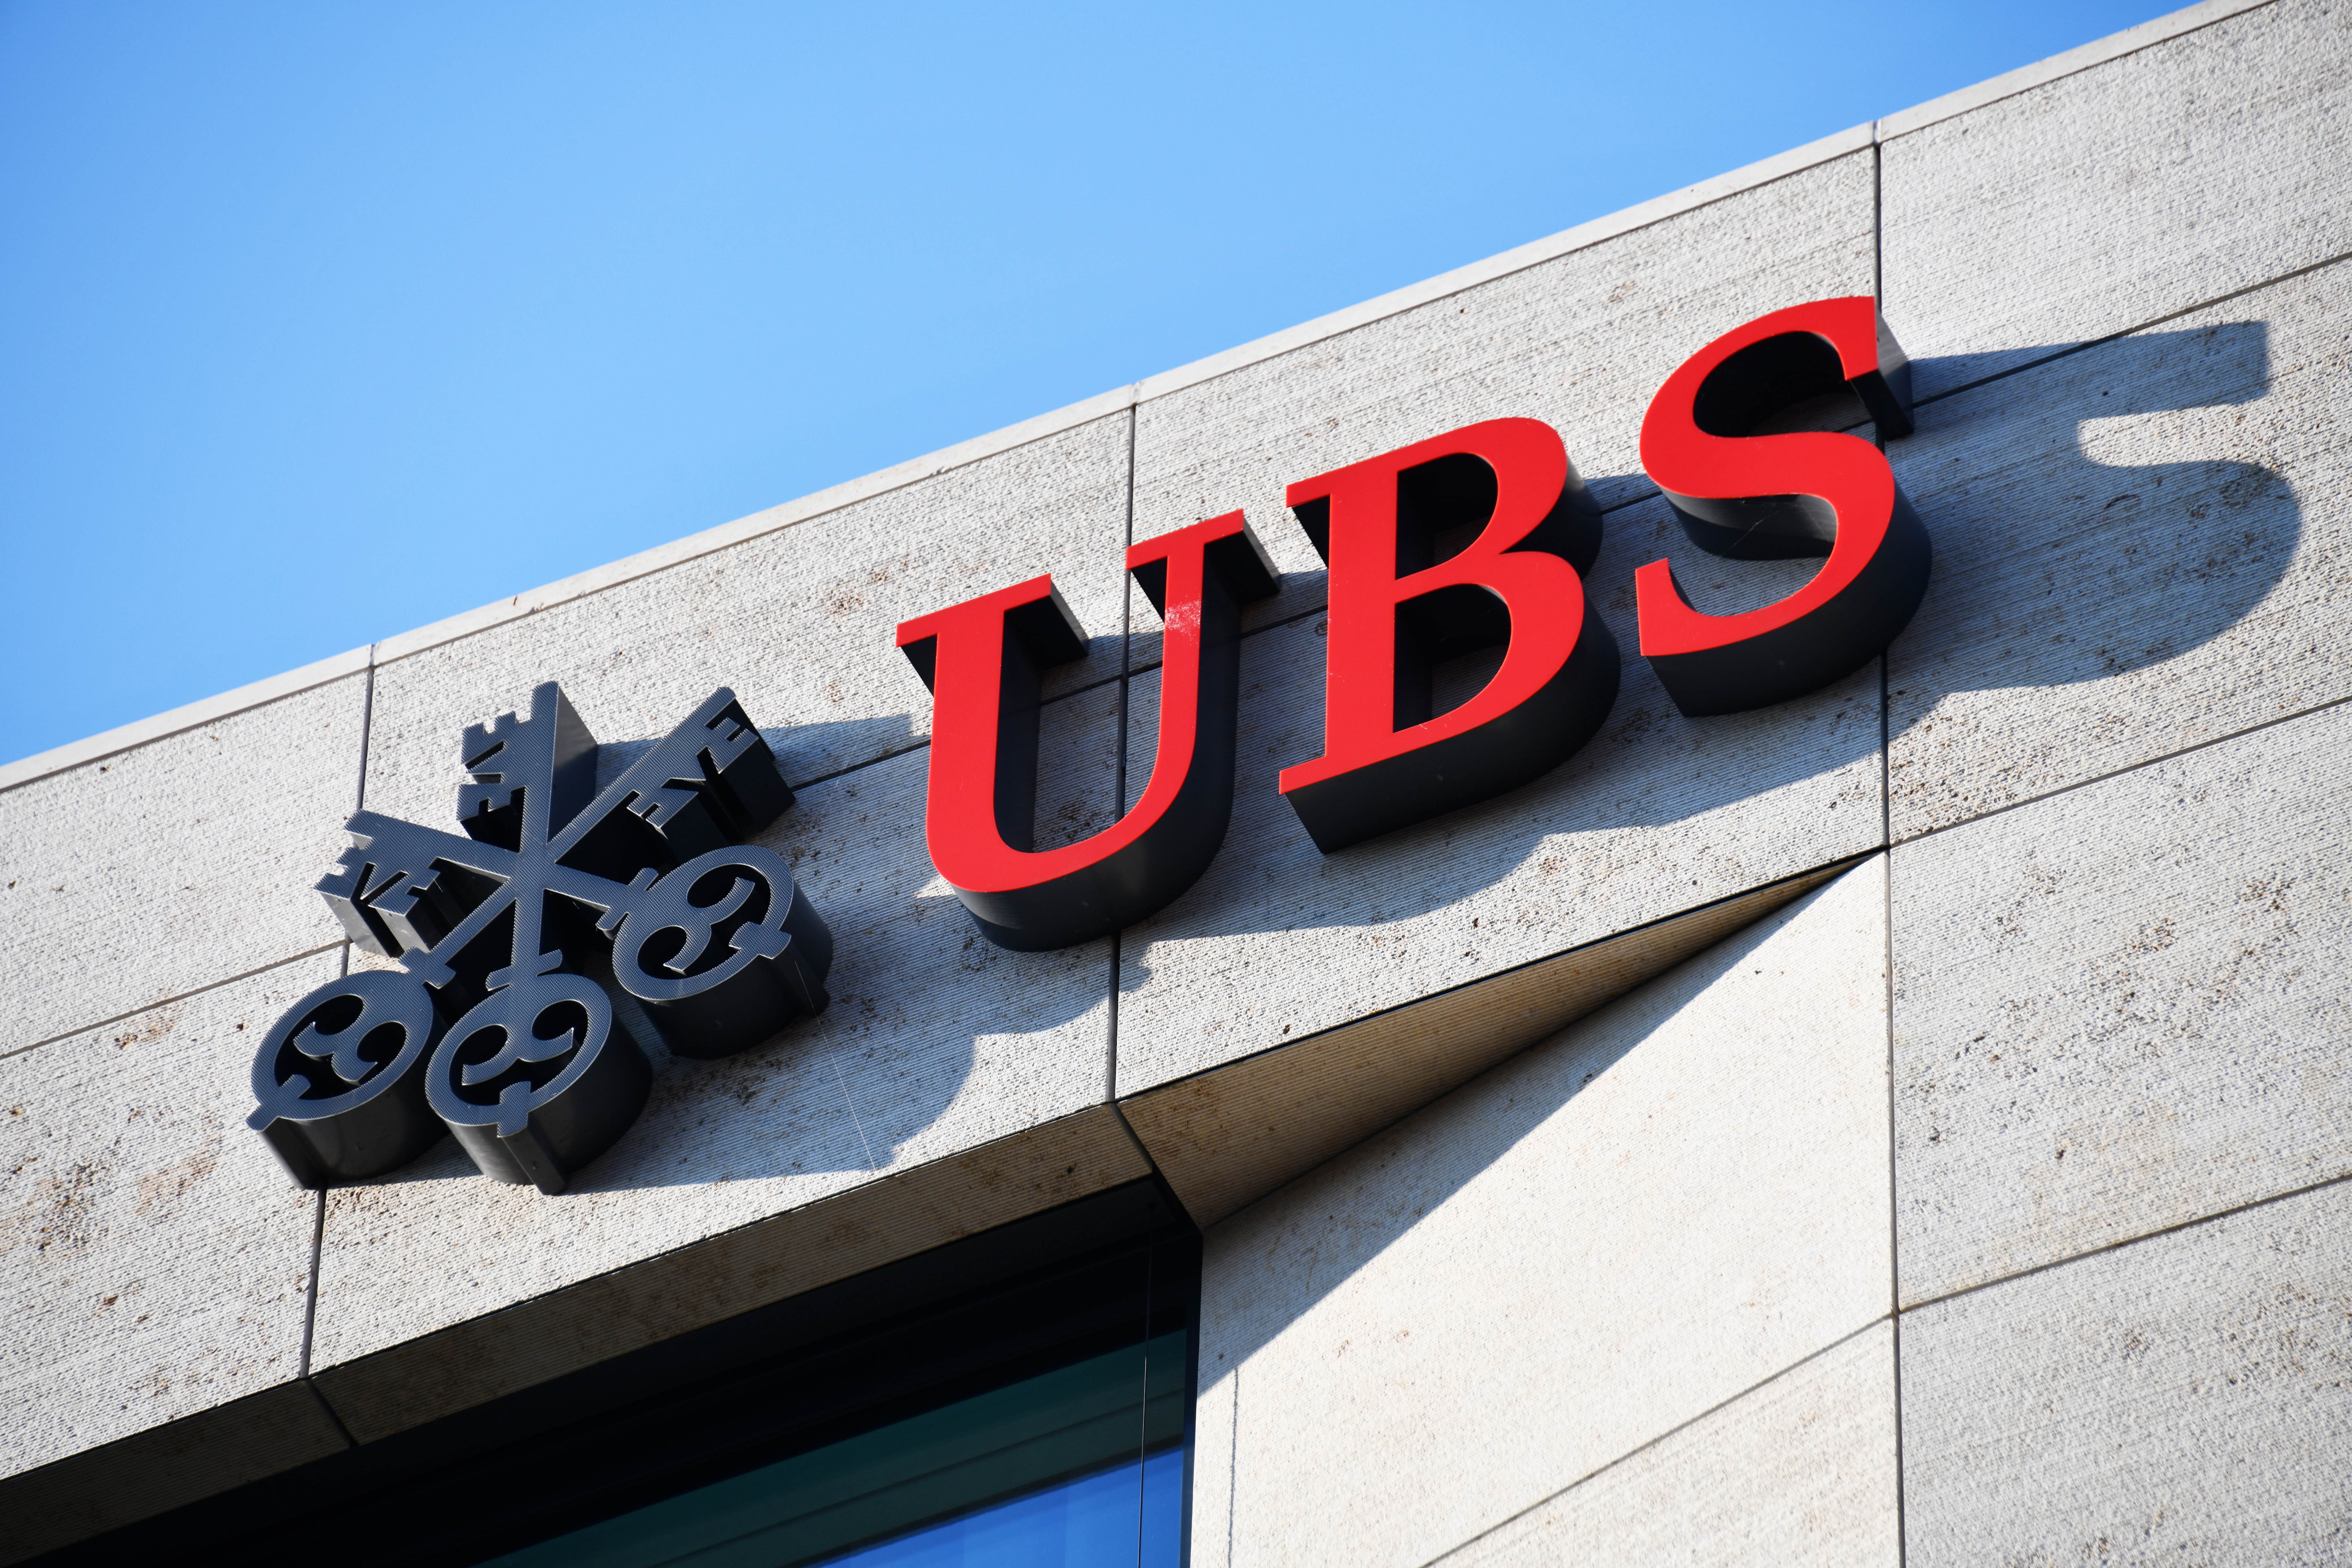 Europa-Aktien sind laut UBS derzeit die bessere Wahl als US-Werte“ – 3 Gründe sprechen dafür